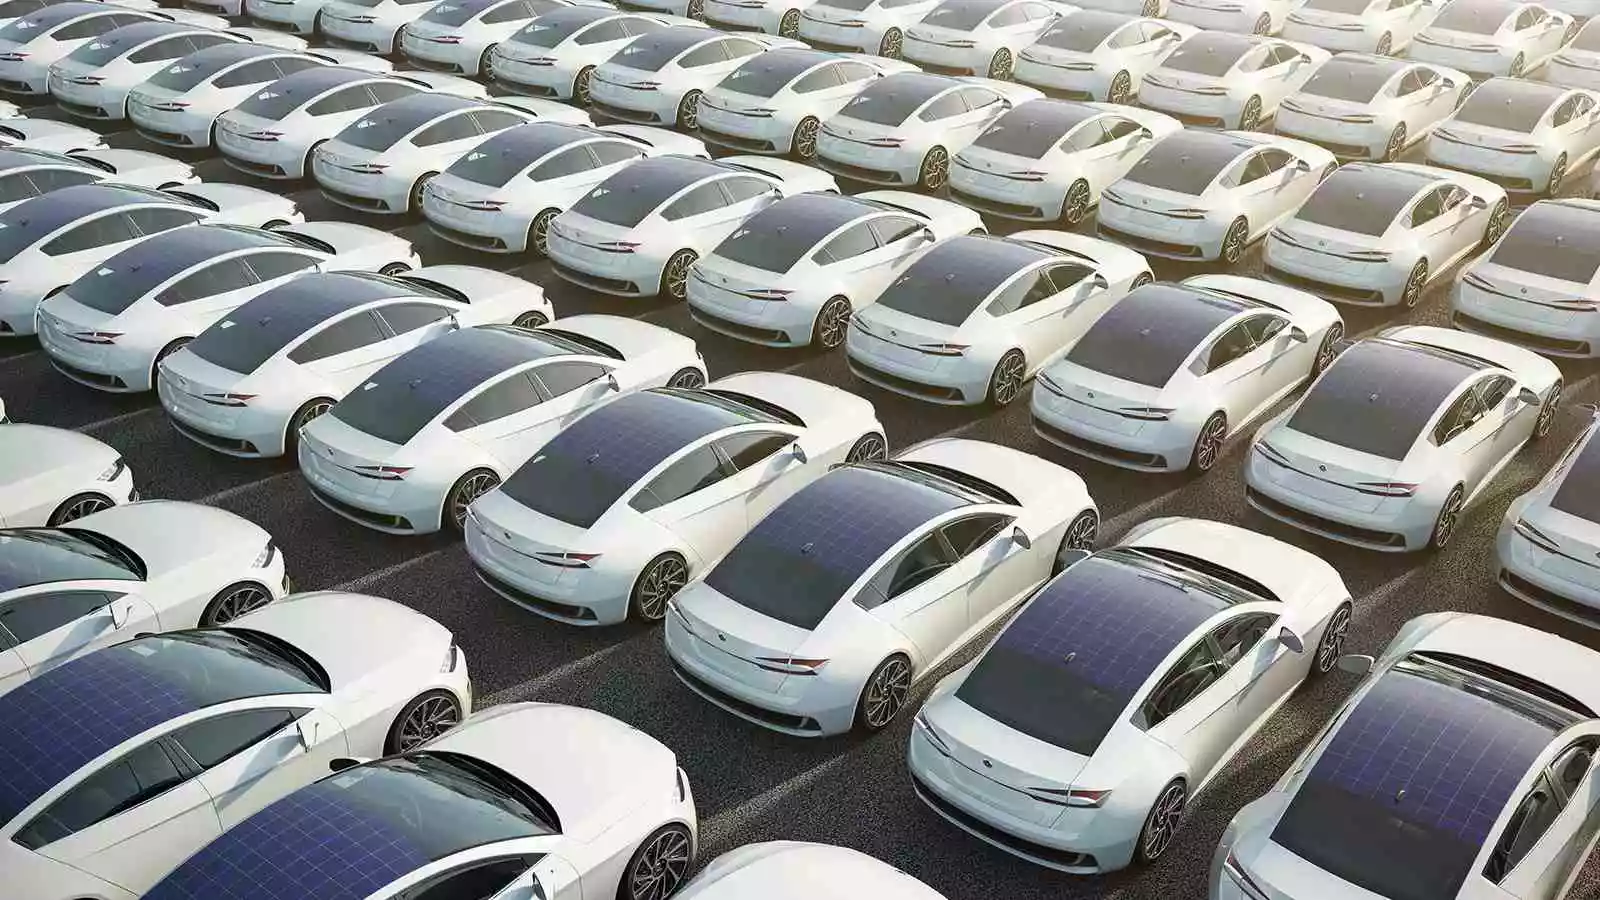 Solar-Powered Cars